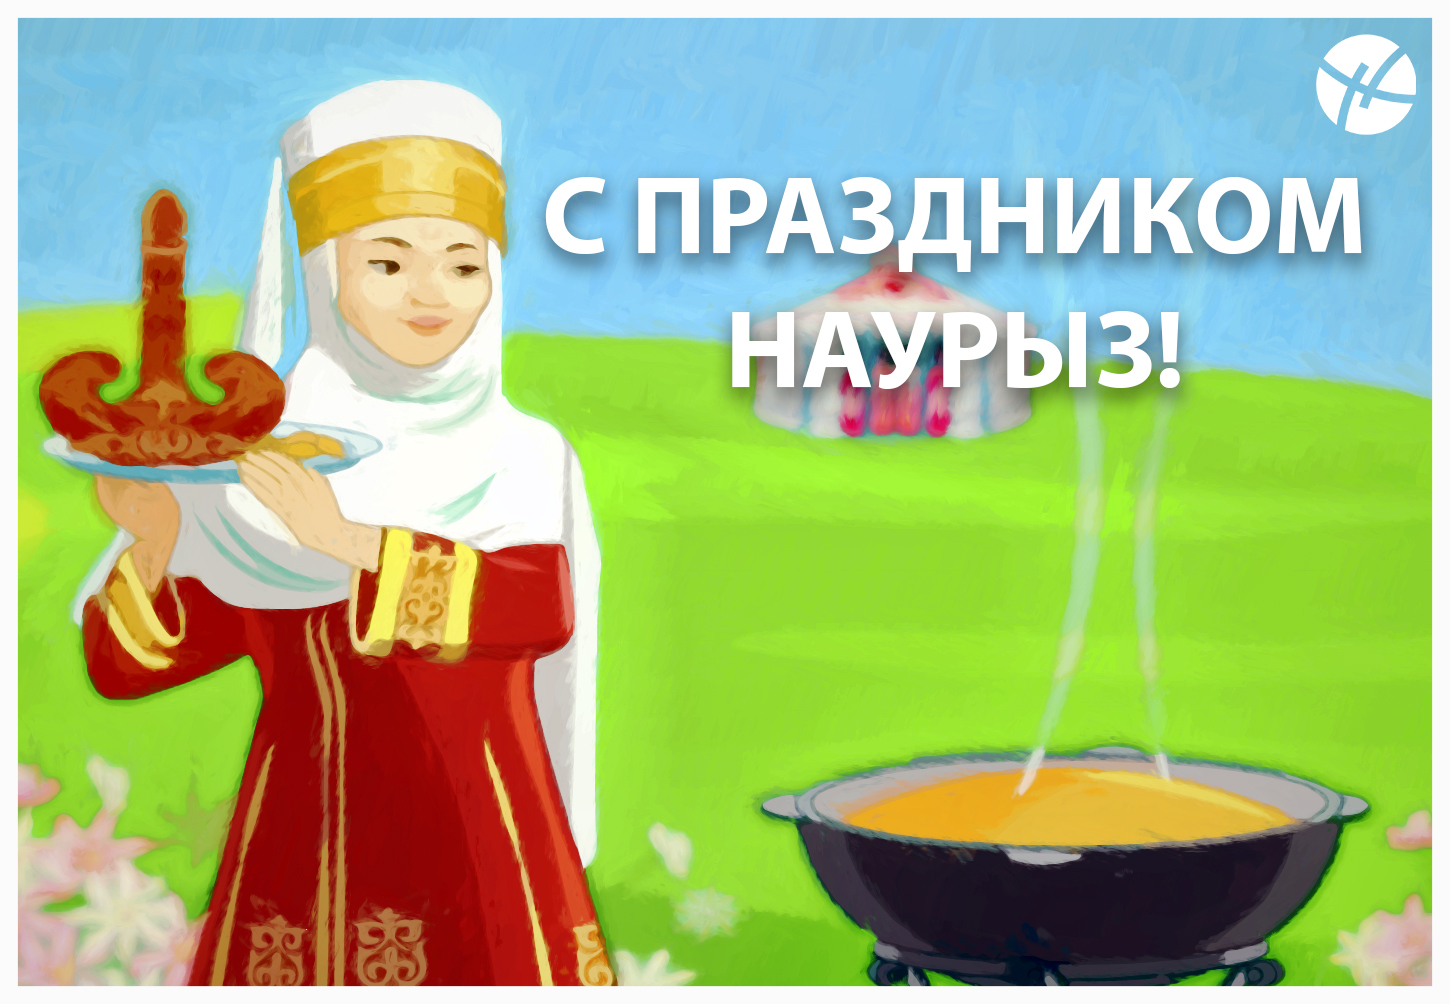 Наурыз празднование русская девушка